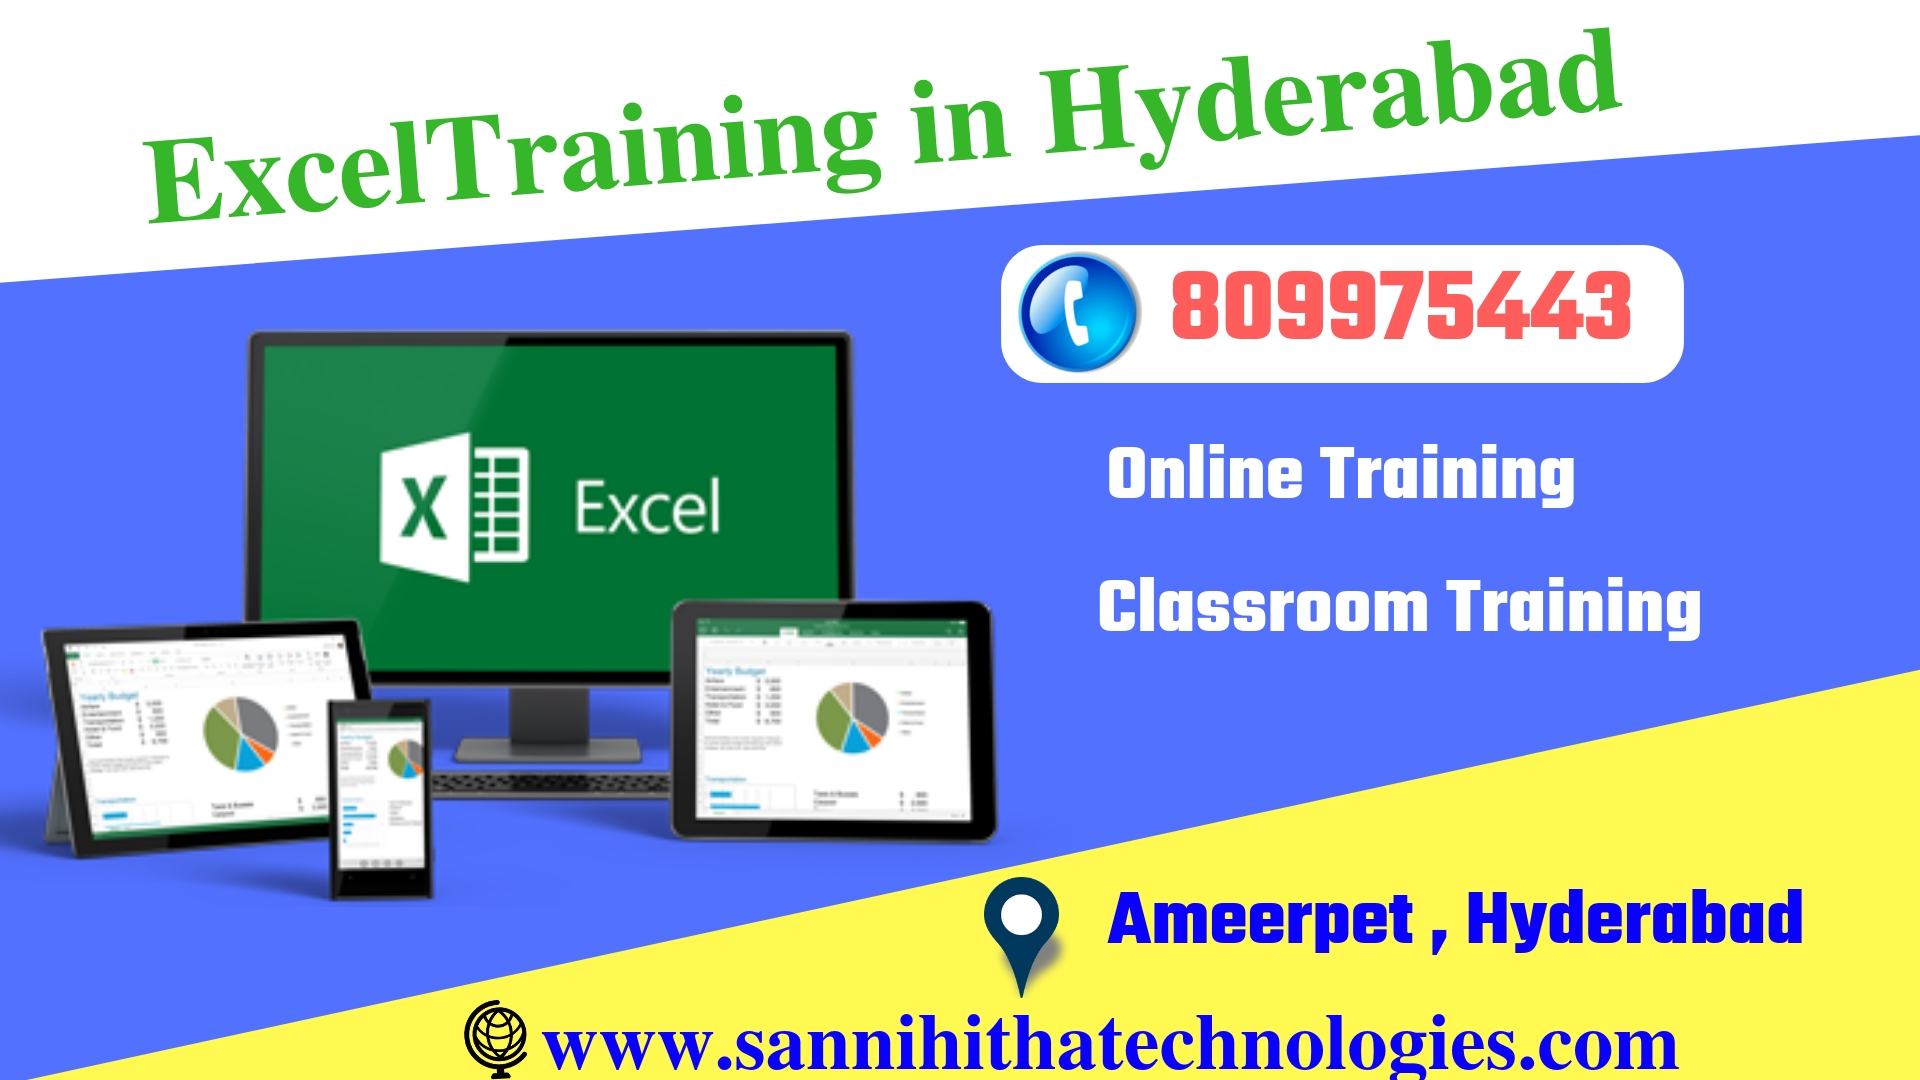 Excel Training in Hyderabad, Hyderabad, Andhra Pradesh, India